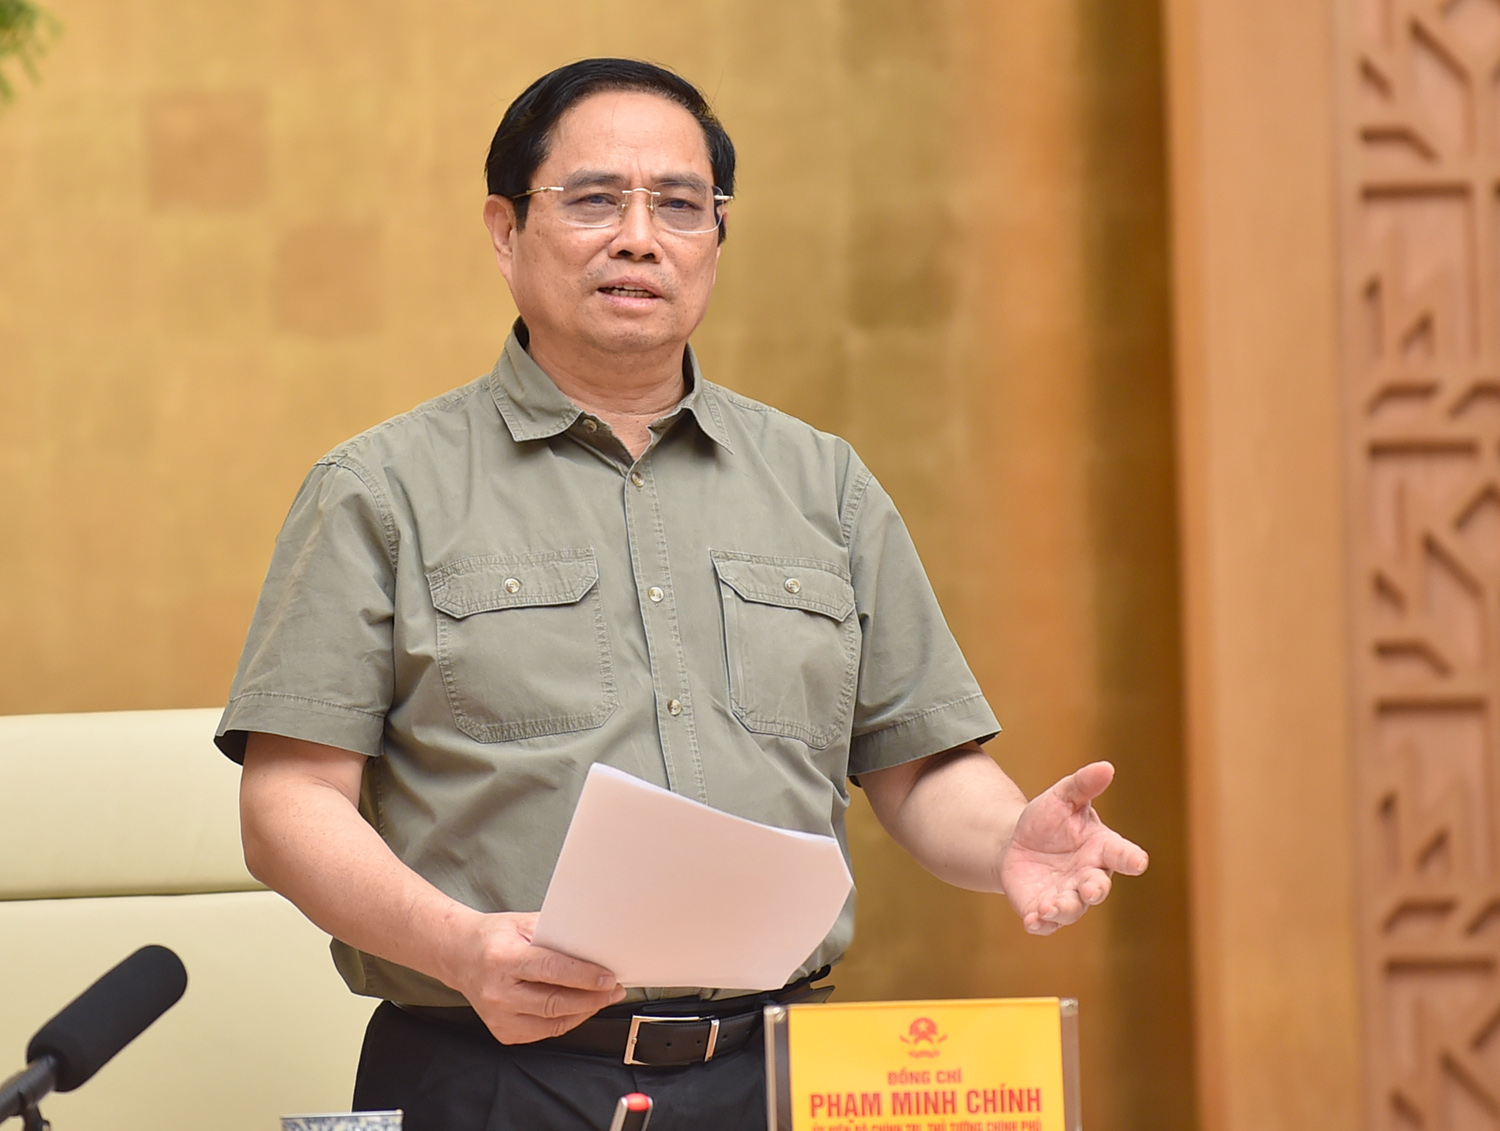 Thủ tướng Phạm Minh Chính nhấn mạnh tư tưởng “phòng dịch tốt thì không phải chống dịch”. Ảnh: VGP/Nhật Bắc